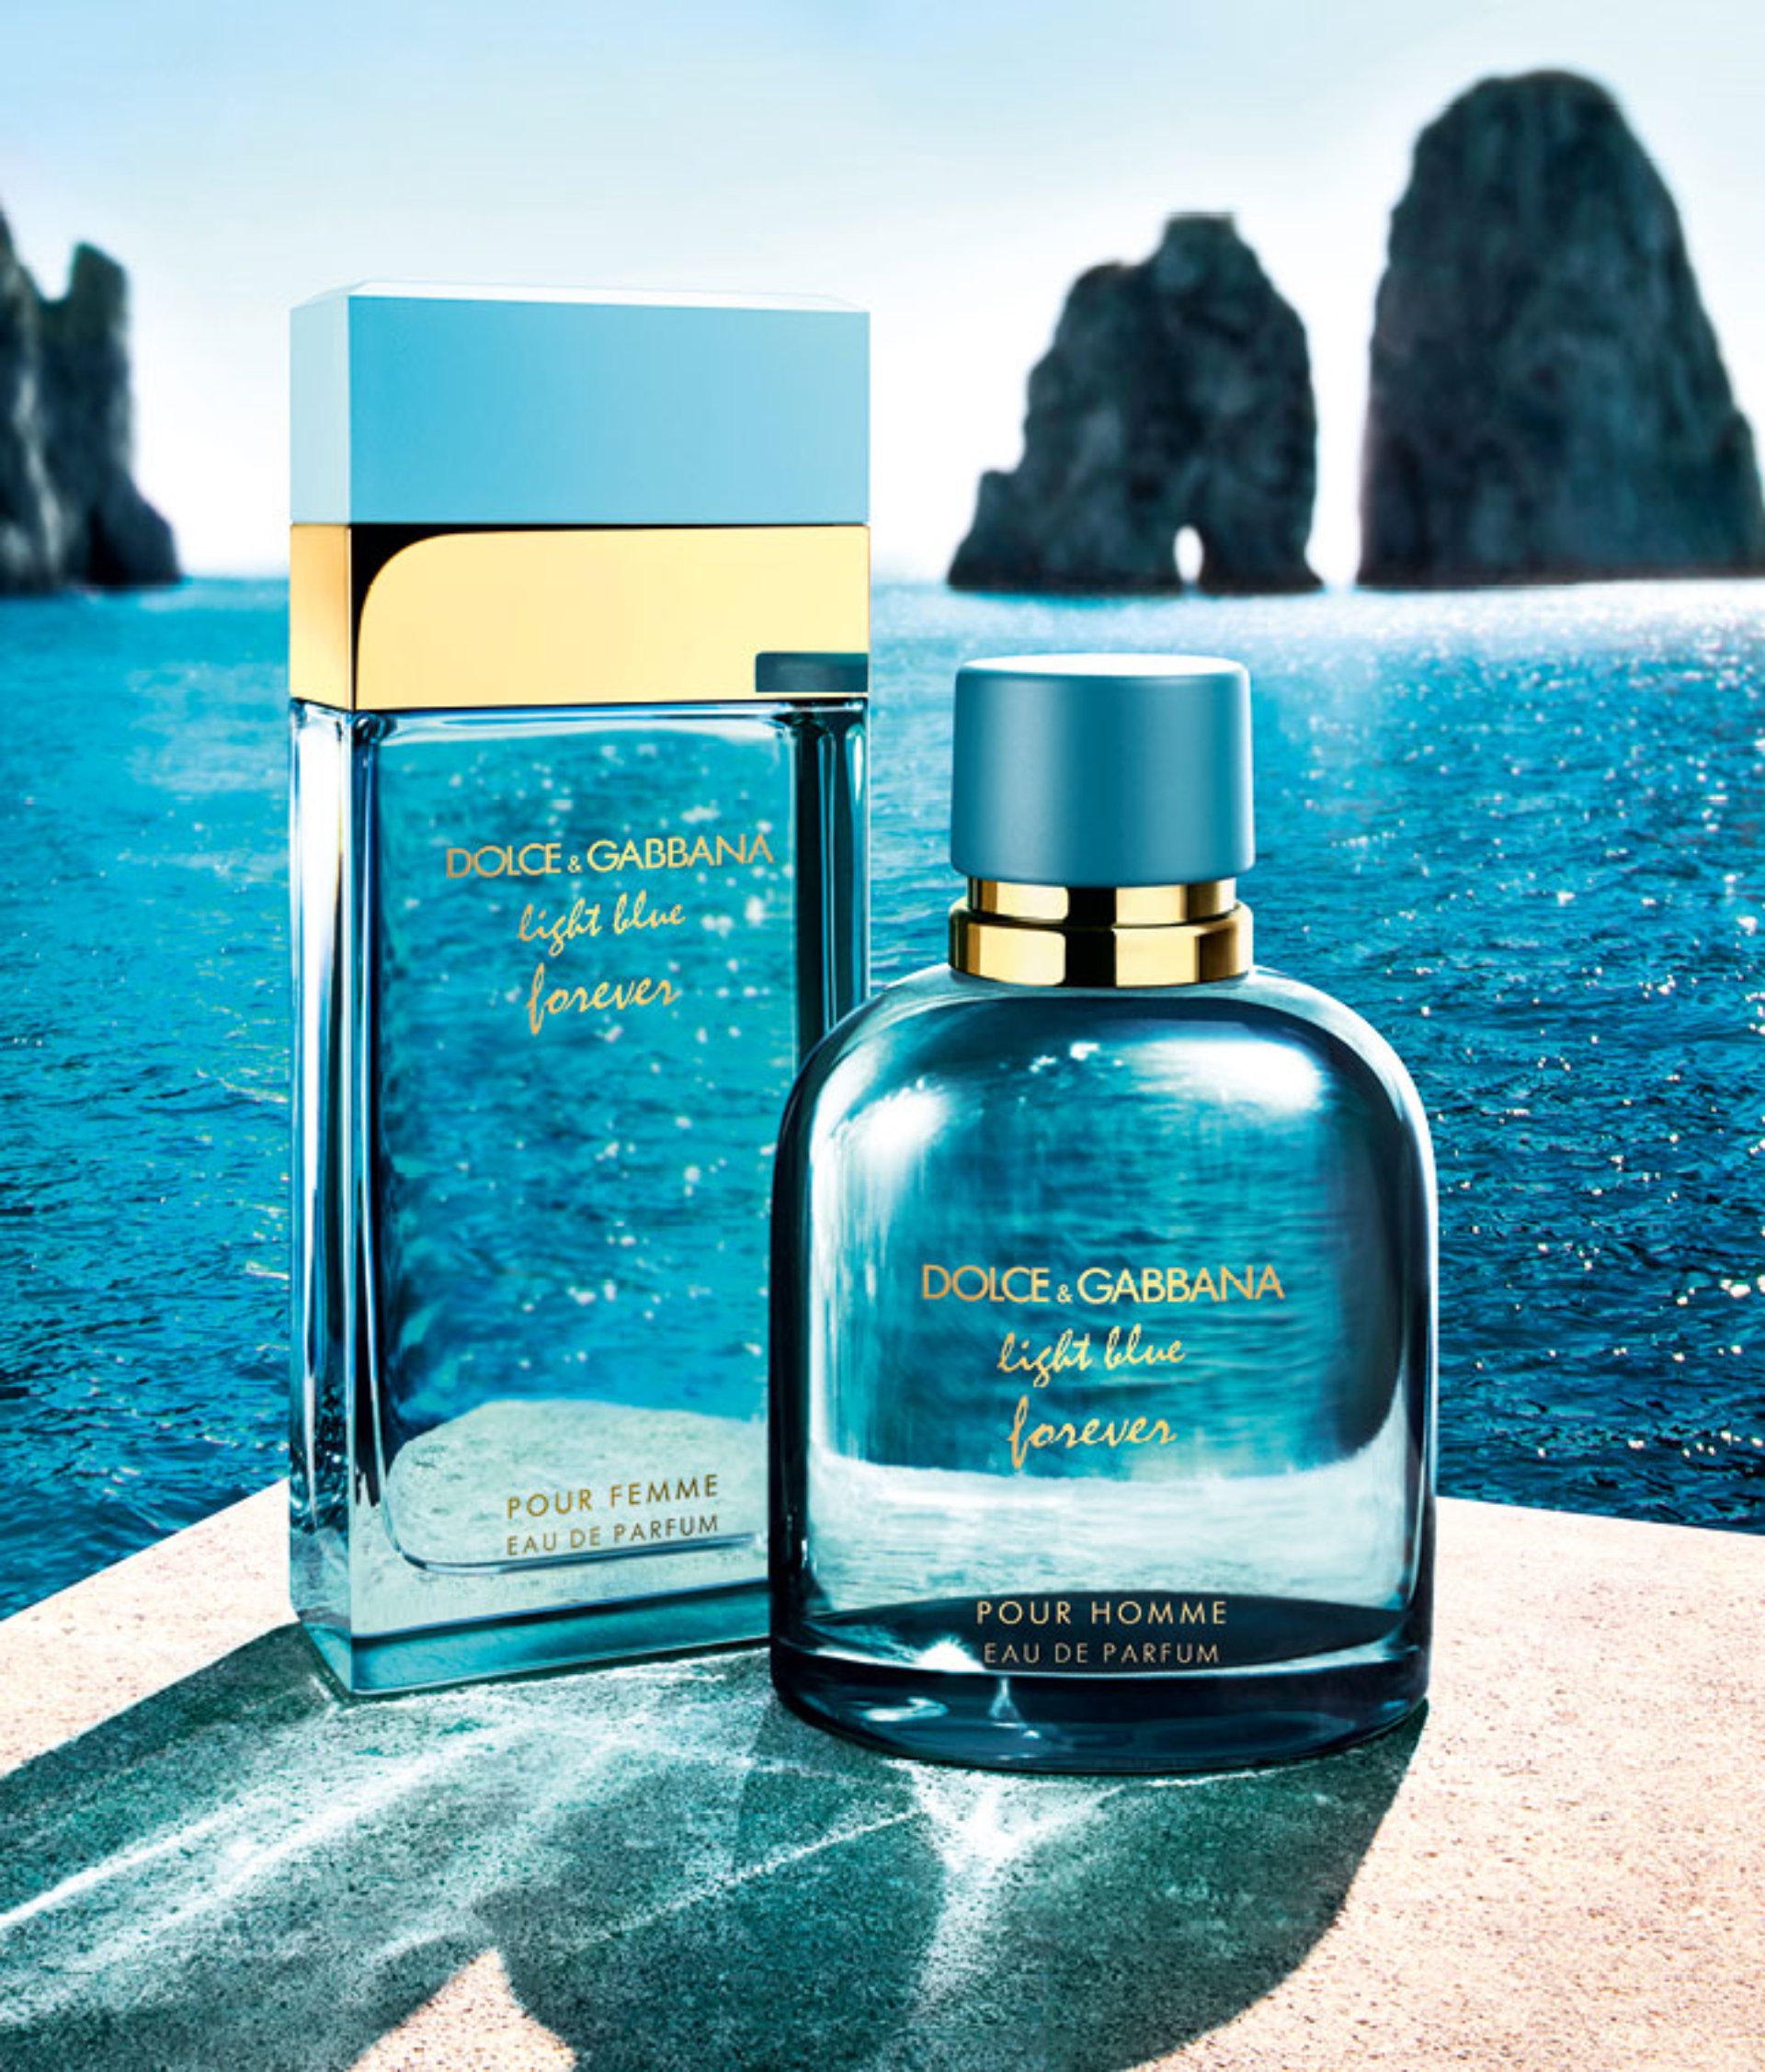 Imperativo Transparente Consultar Light Blue Forever, es la nueva versión perfume de Dolce & Gabbana — Muy  Cosmopolitas